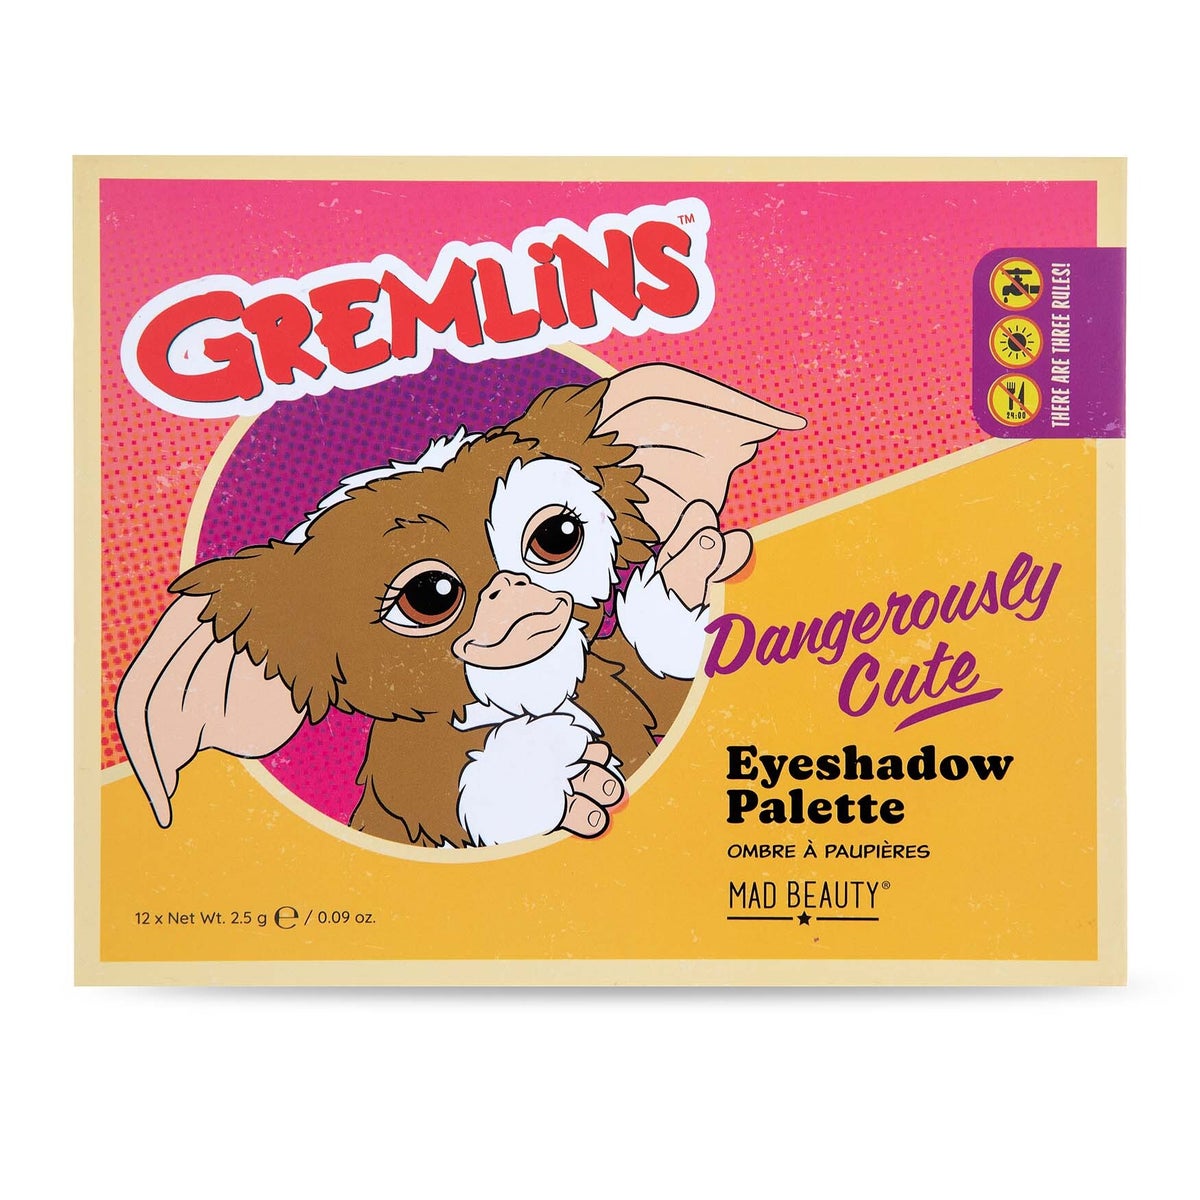 Warner Gremlins - Eyeshadow Palette